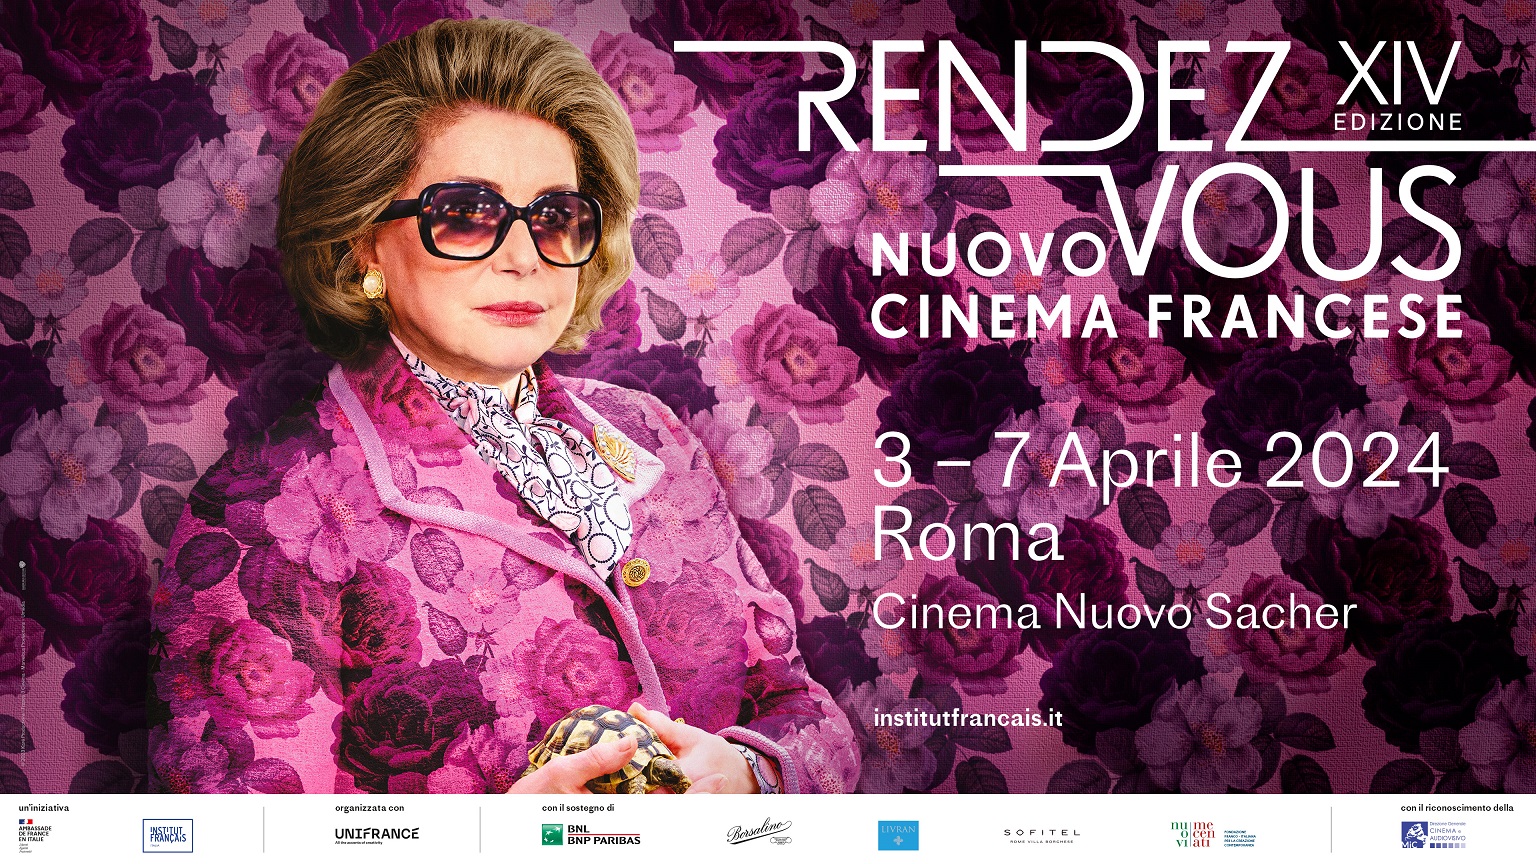 Da domani al via RENDEZ-VOUS CINEMA FRANCESE: tutto il programma dal 3 al 7 aprile a Roma